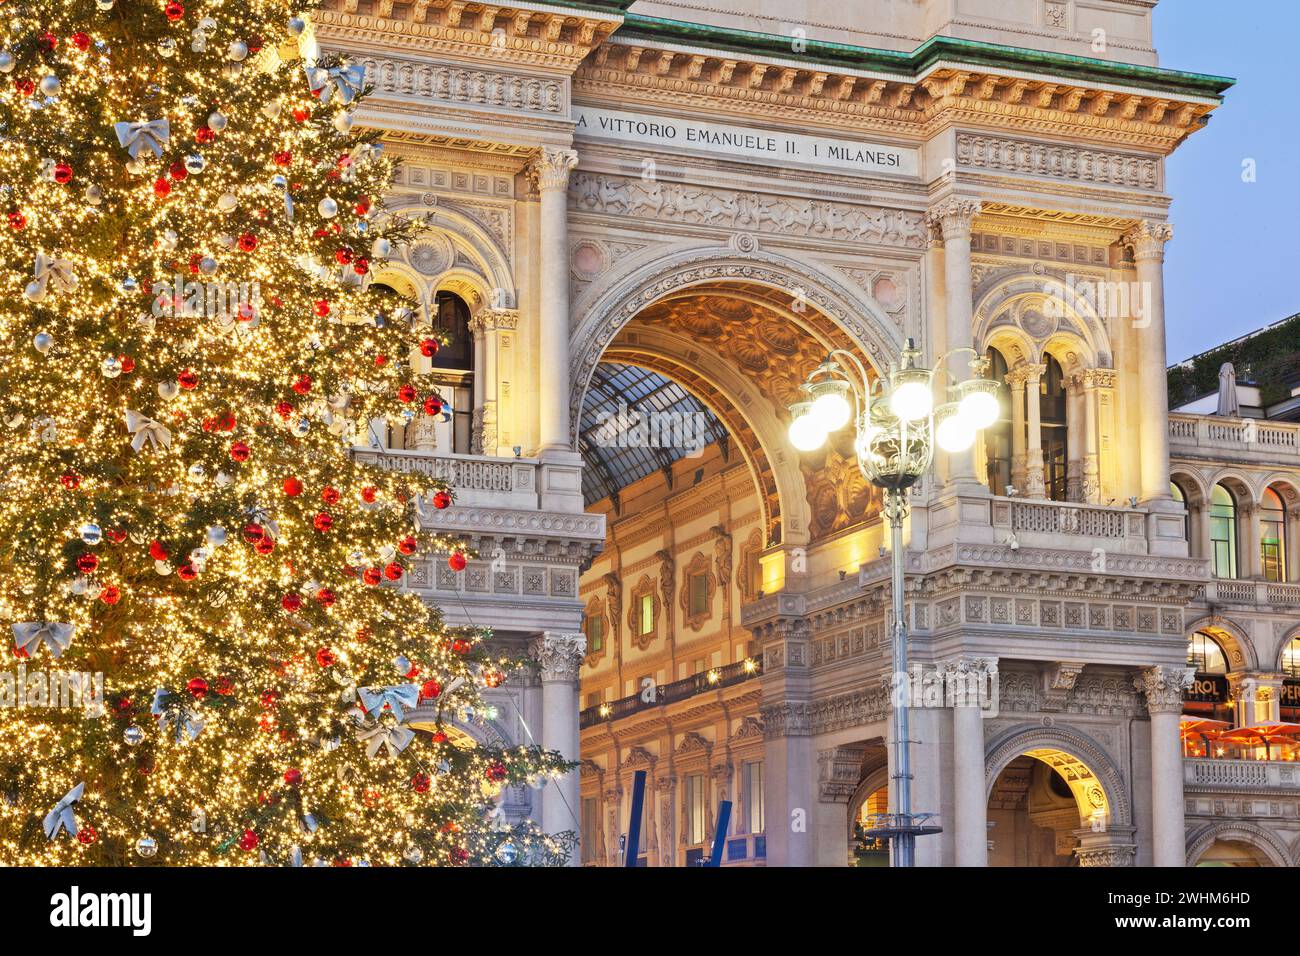 Albero di Natale e decorazioni natalizie presso la Galleria Vittorio Emanuele II in Piazza del Duomo di Milano, Piemonte, Italia, Europa. Foto Stock